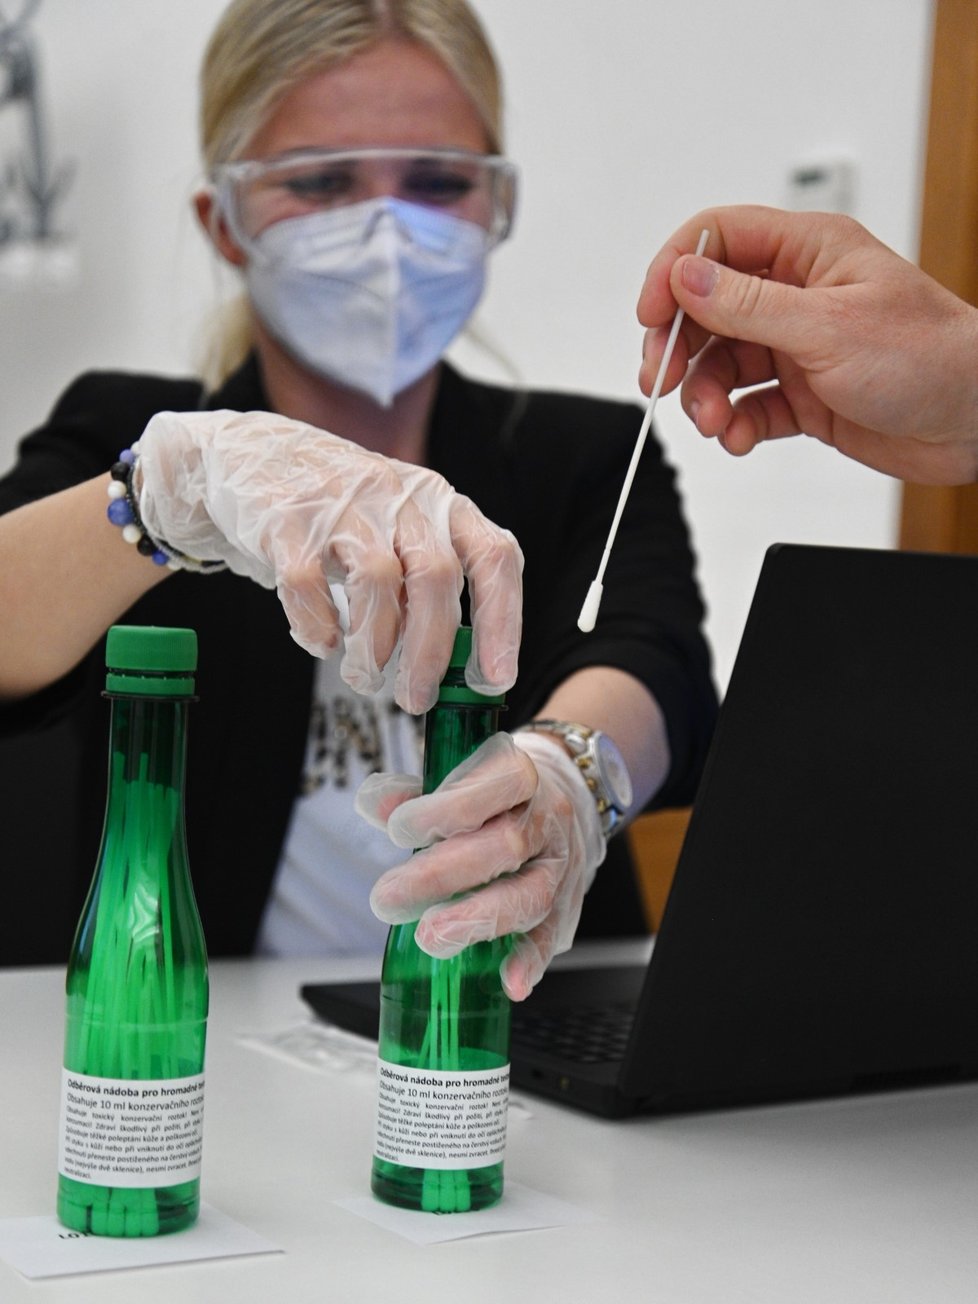 Mendelova univerzita v Brně od 26. dubna 2021 pilotně testuje své zaměstnance na koronavirus PCR metodou ze slin.